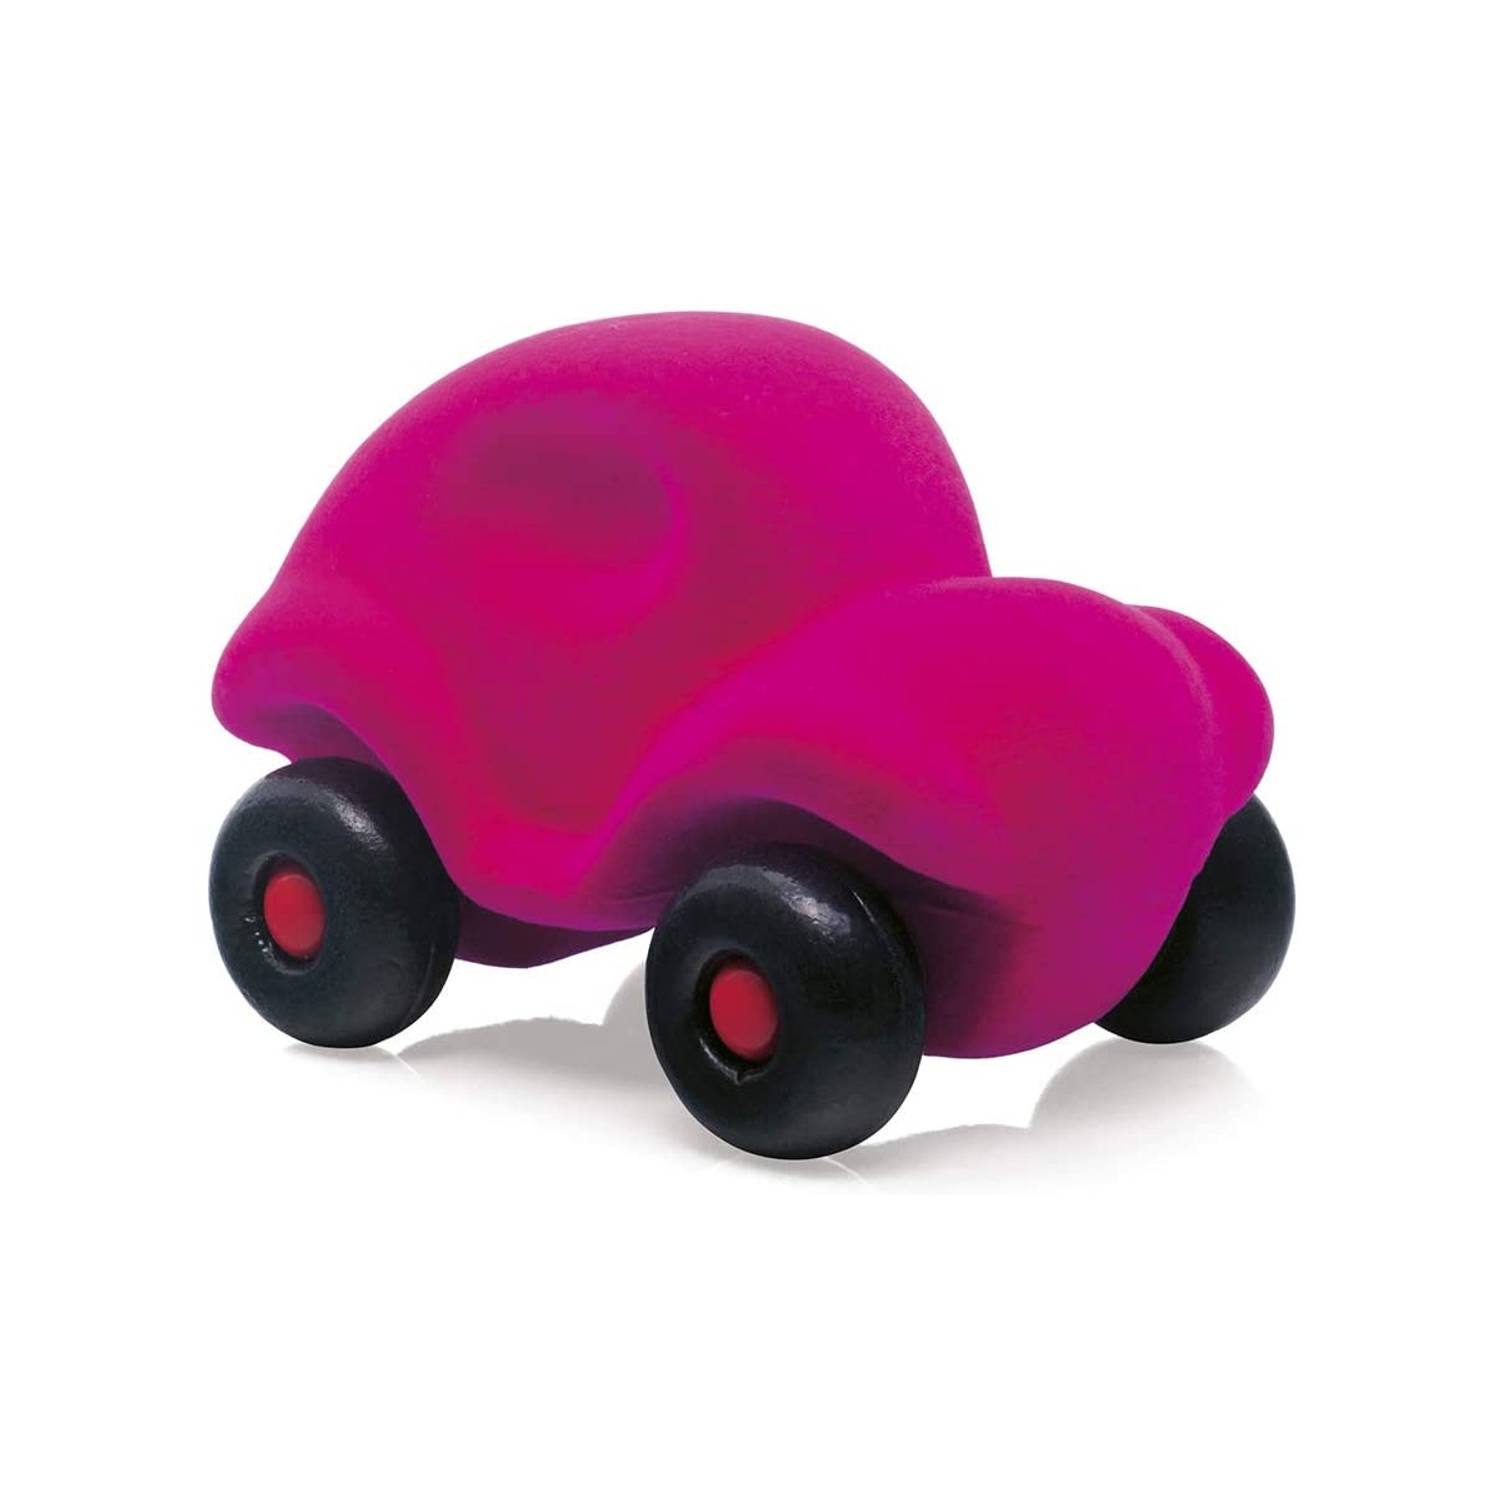 Rubbabu - Kleine auto roze